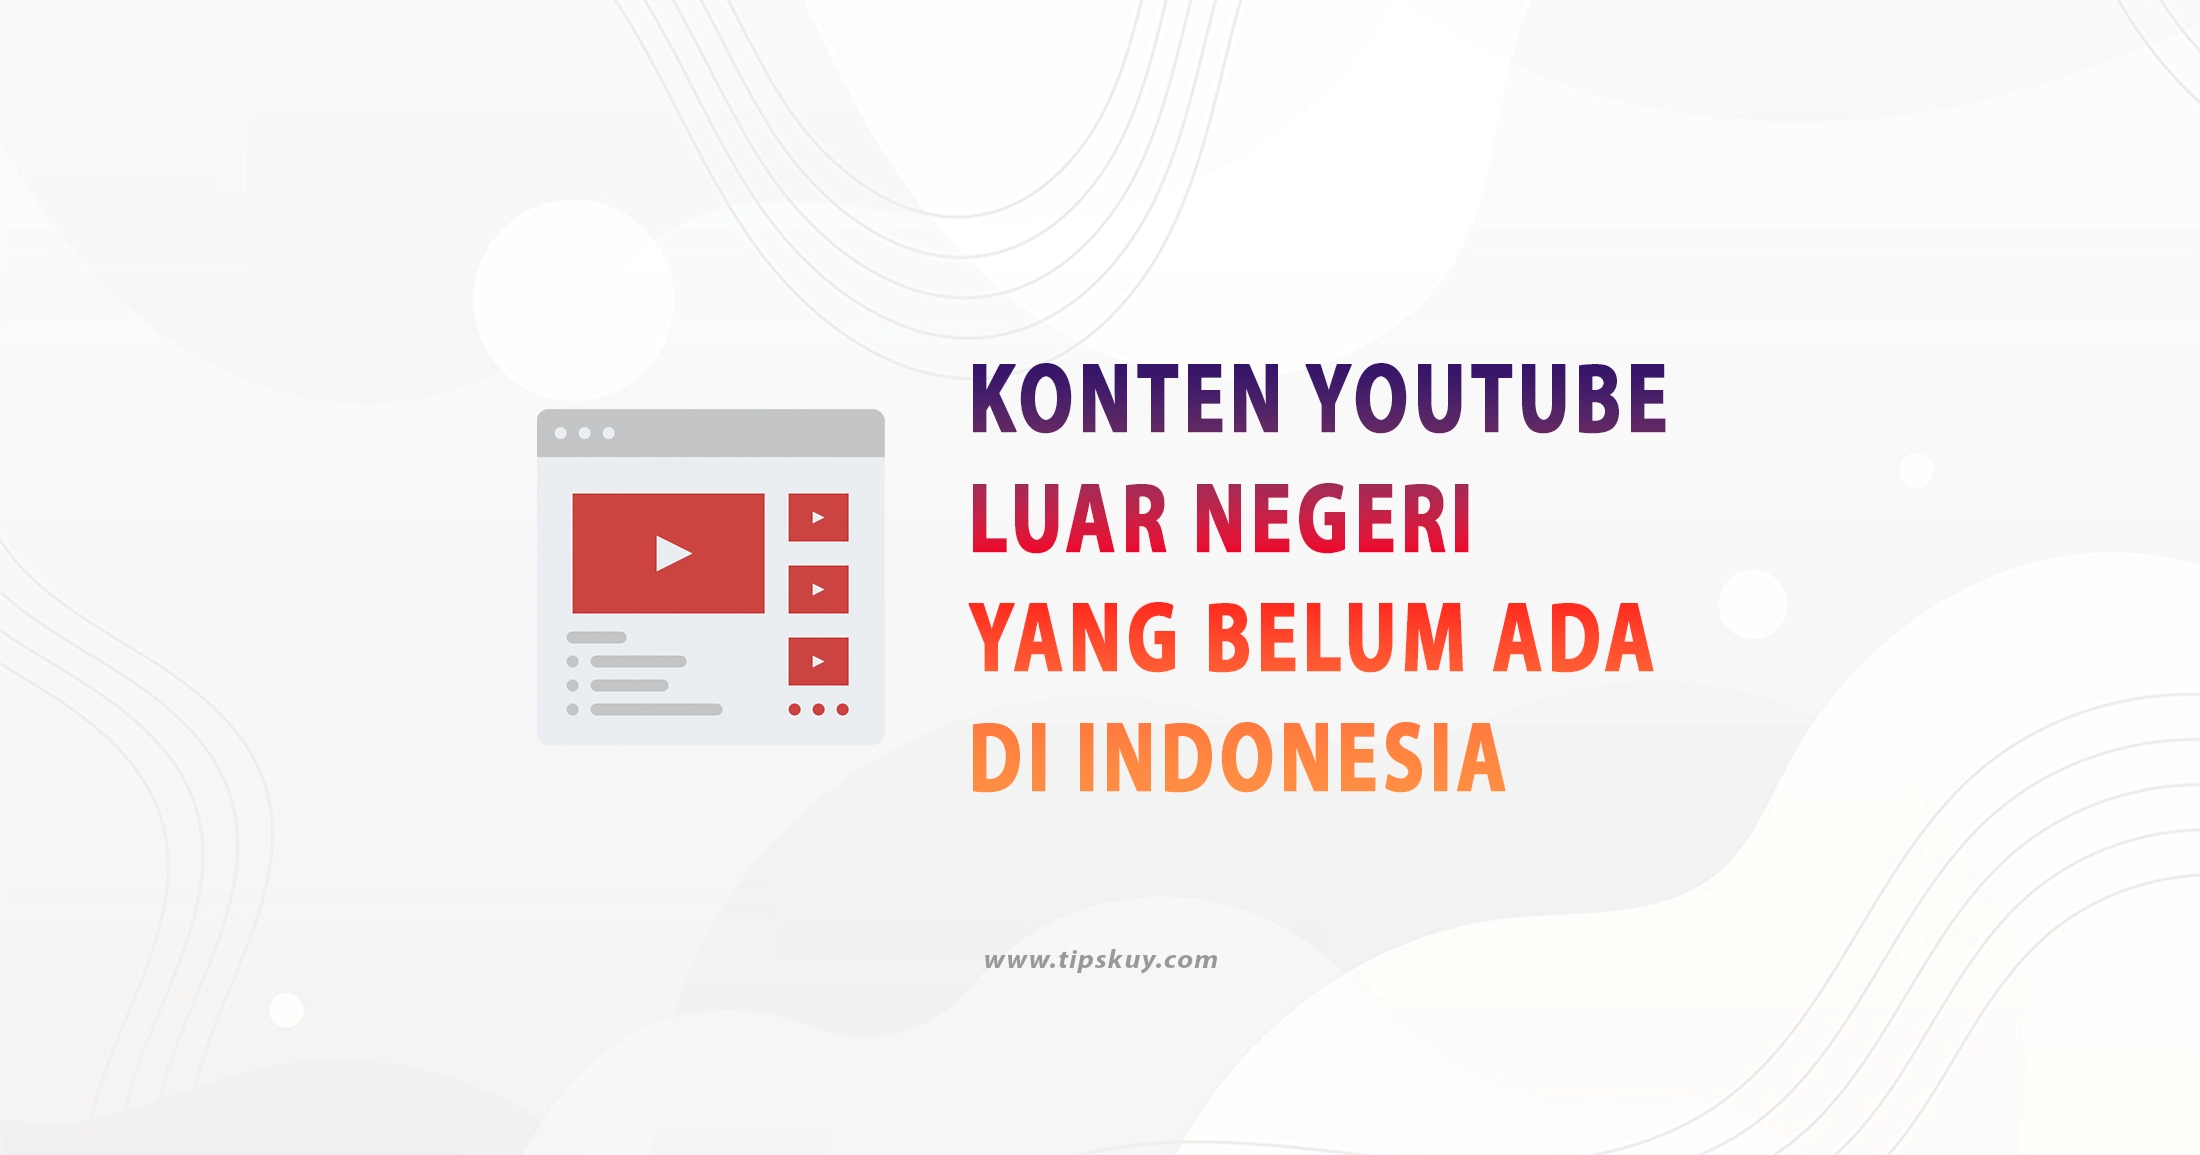 Konten Youtube Luar Negeri Yang Belum Ada Di Indonesia